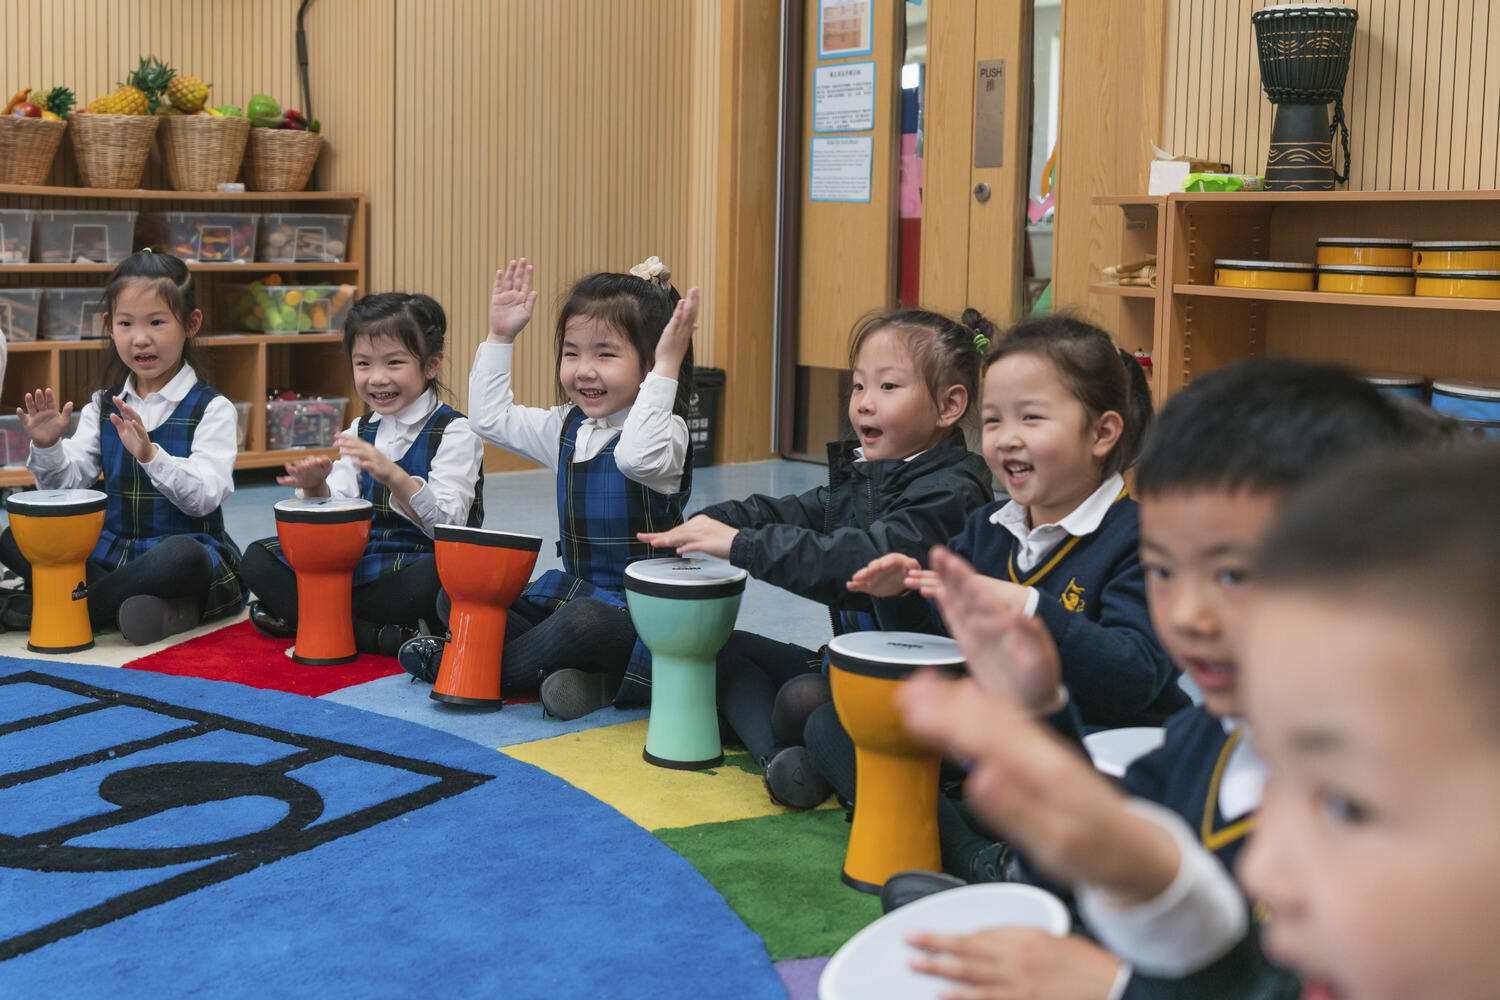 上海惠立幼儿园学前教育课程之全人教育理念